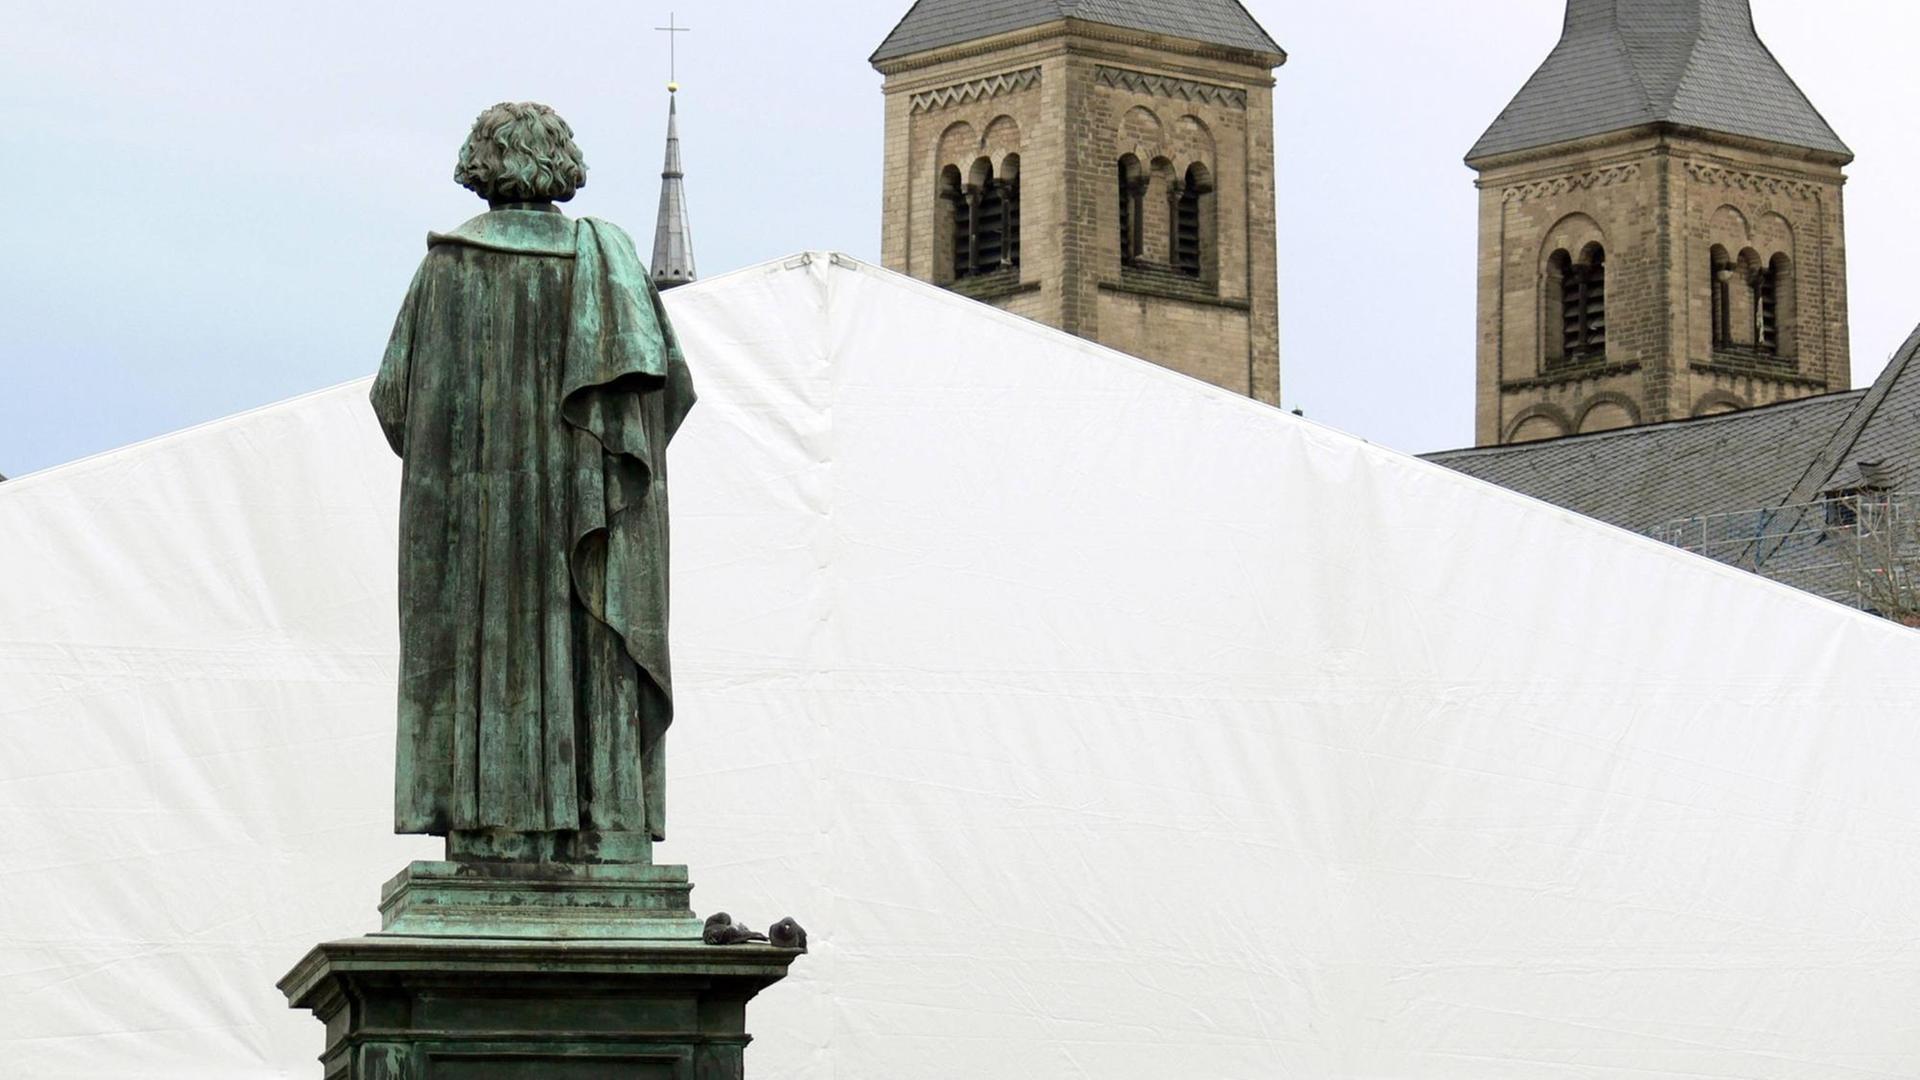 Die Bonner Statue Beethovens in Rückenansicht, die scheinbar auf die Türme des Bonner Münsters schaut.